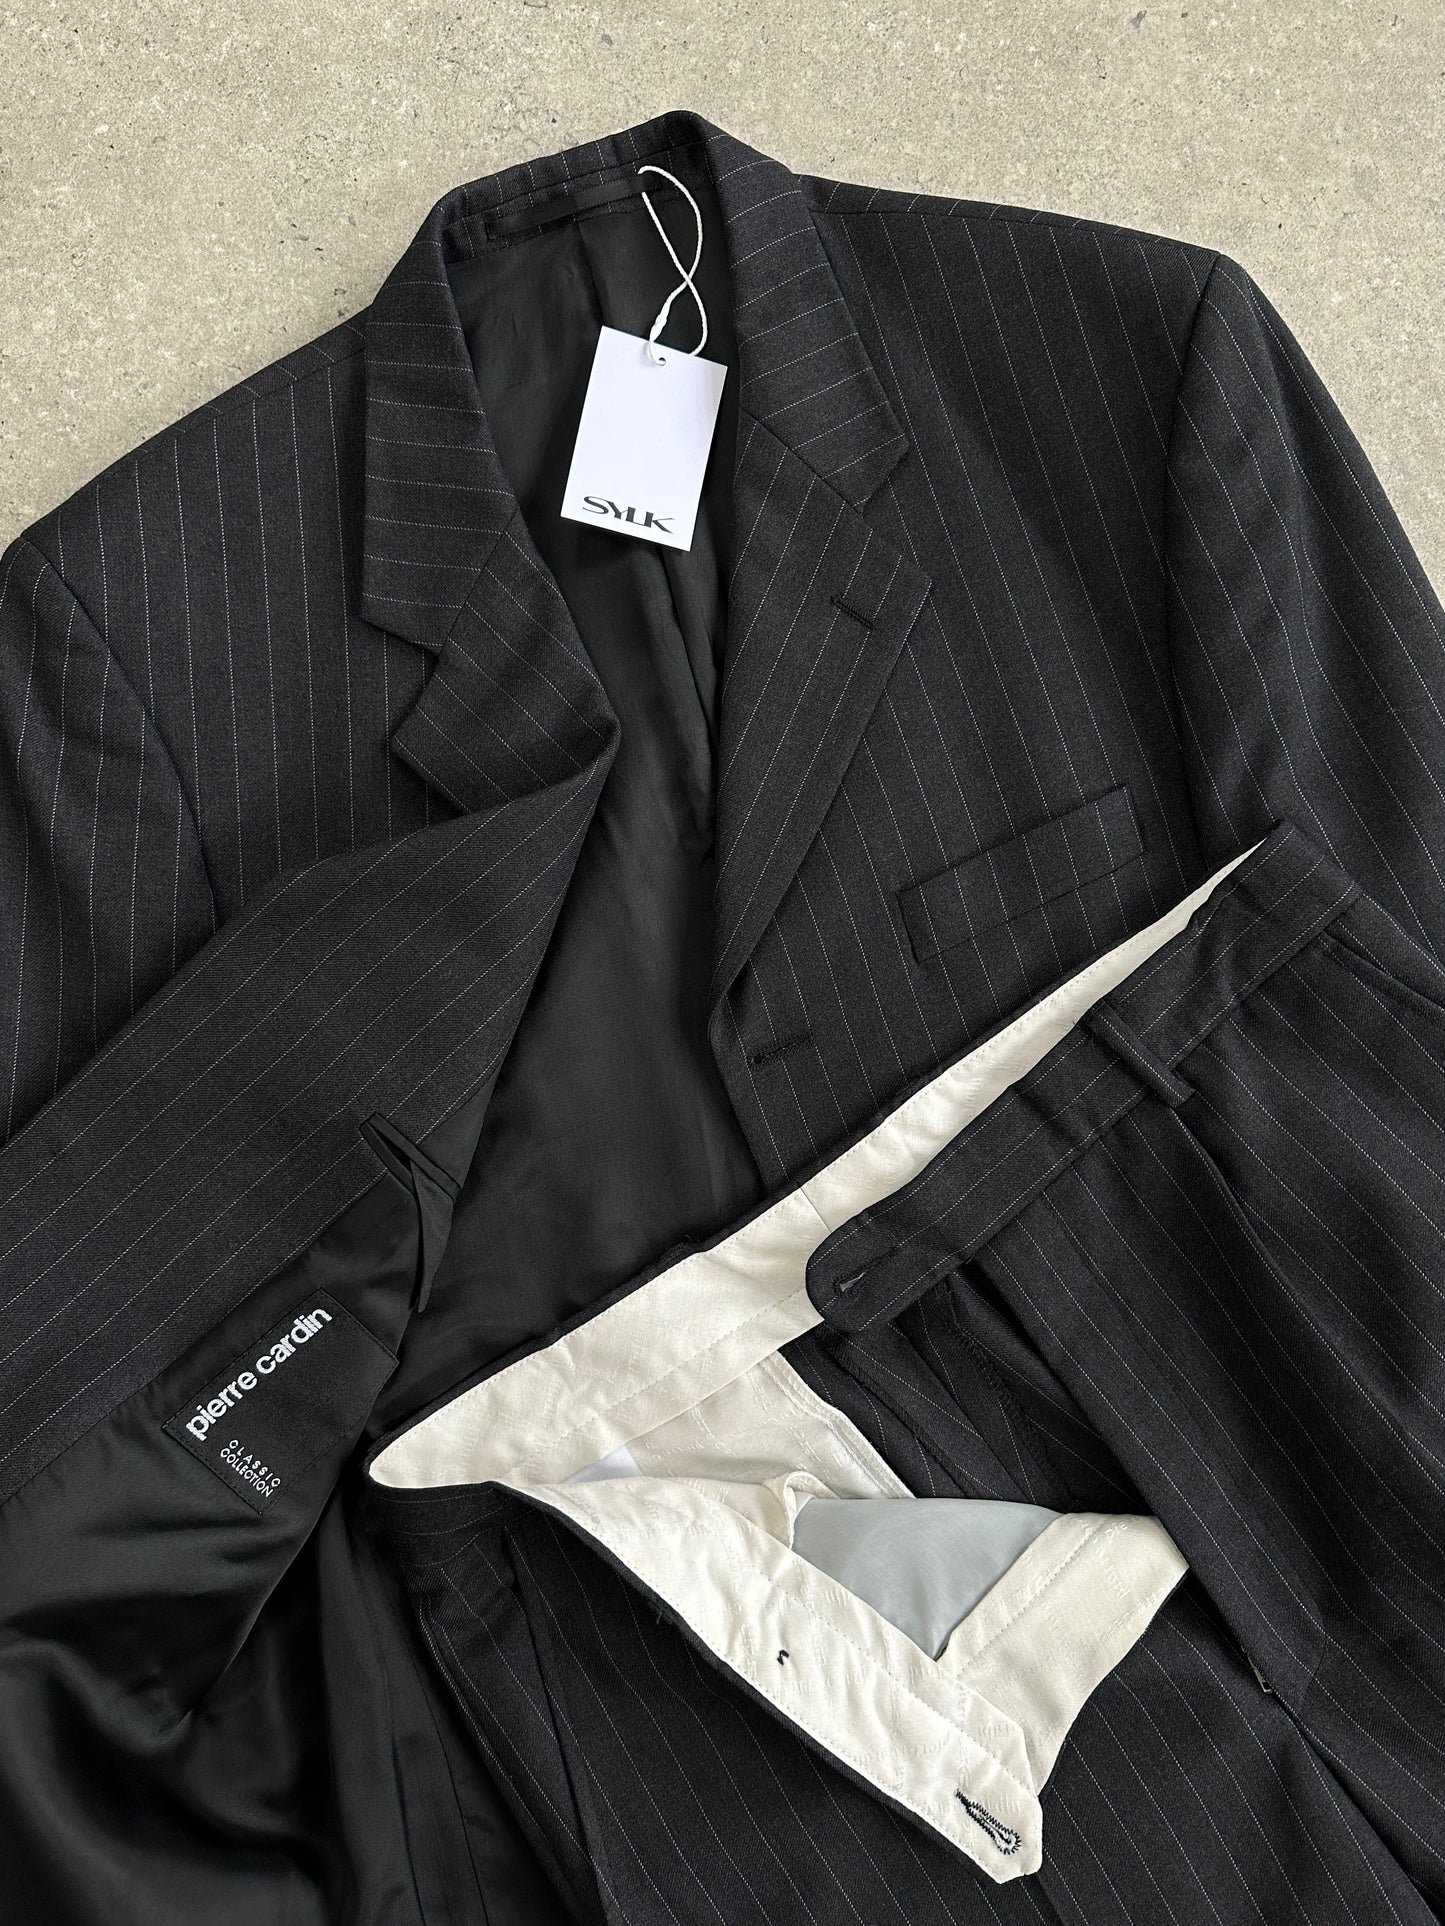 Pierre Cardin Pinstripe Pure Wool Single Breasted Suit - 40R/W32